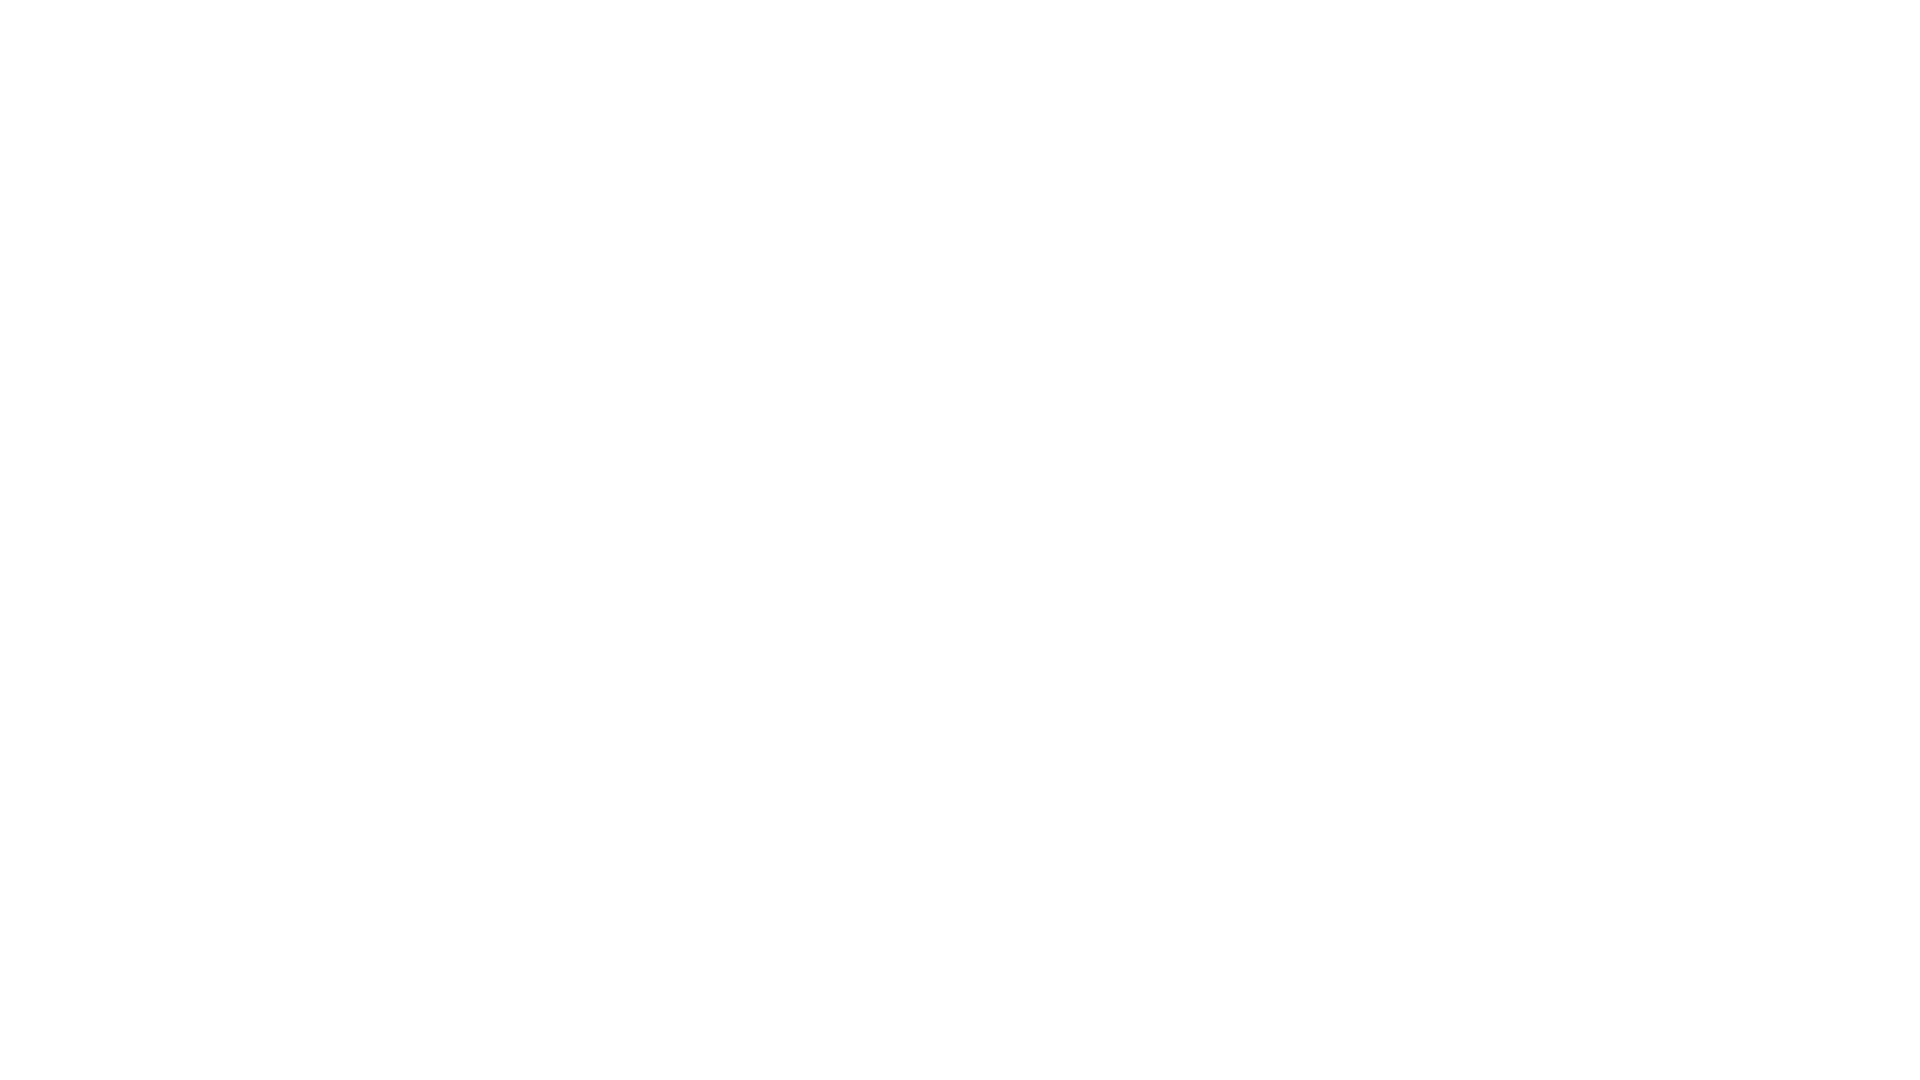 Velocity Score (87)